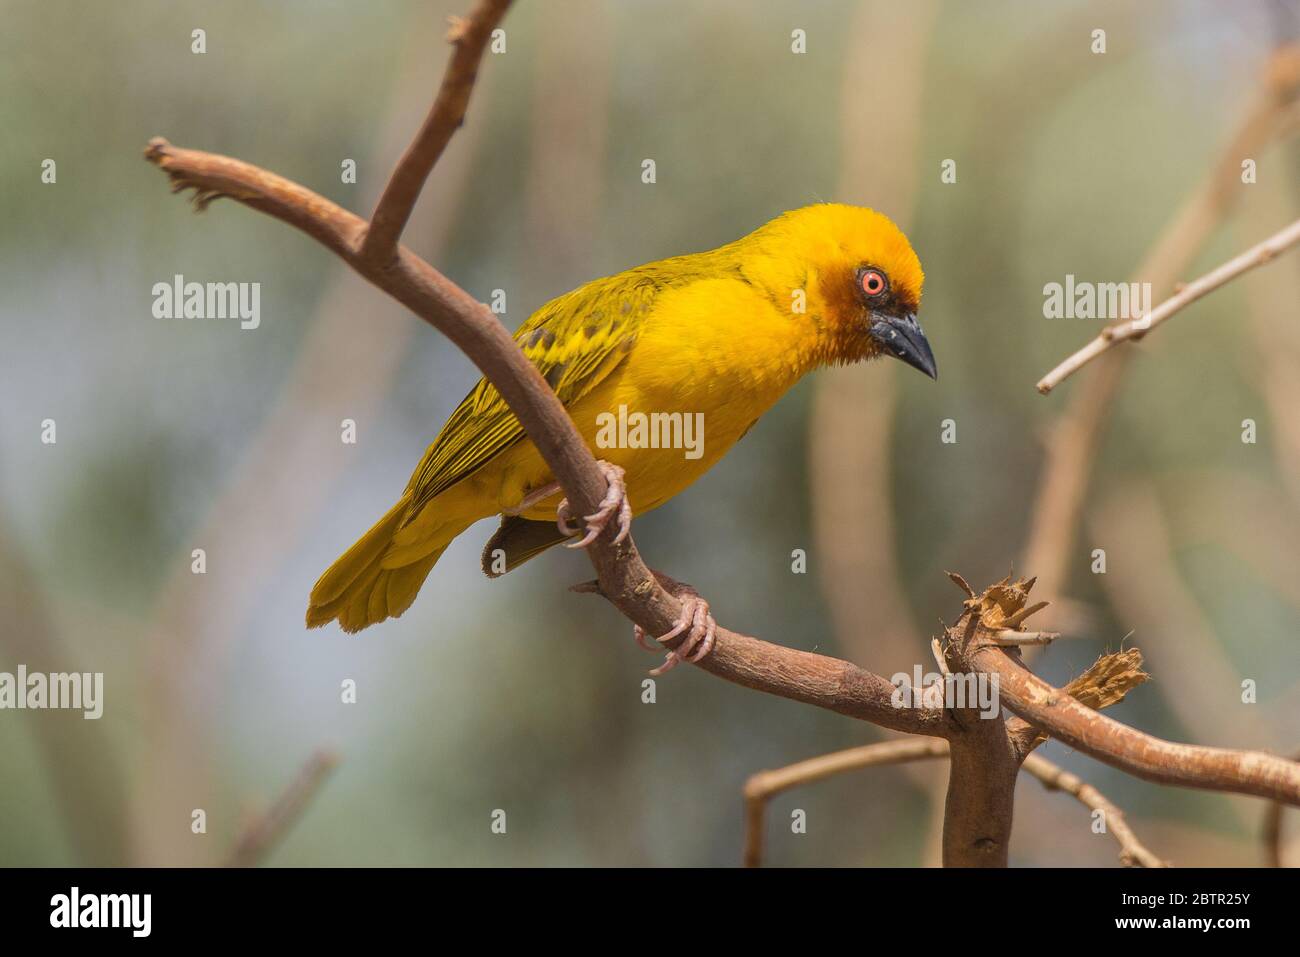 Oiseau de tisserand jaune d'Arabie Saoudite Banque D'Images